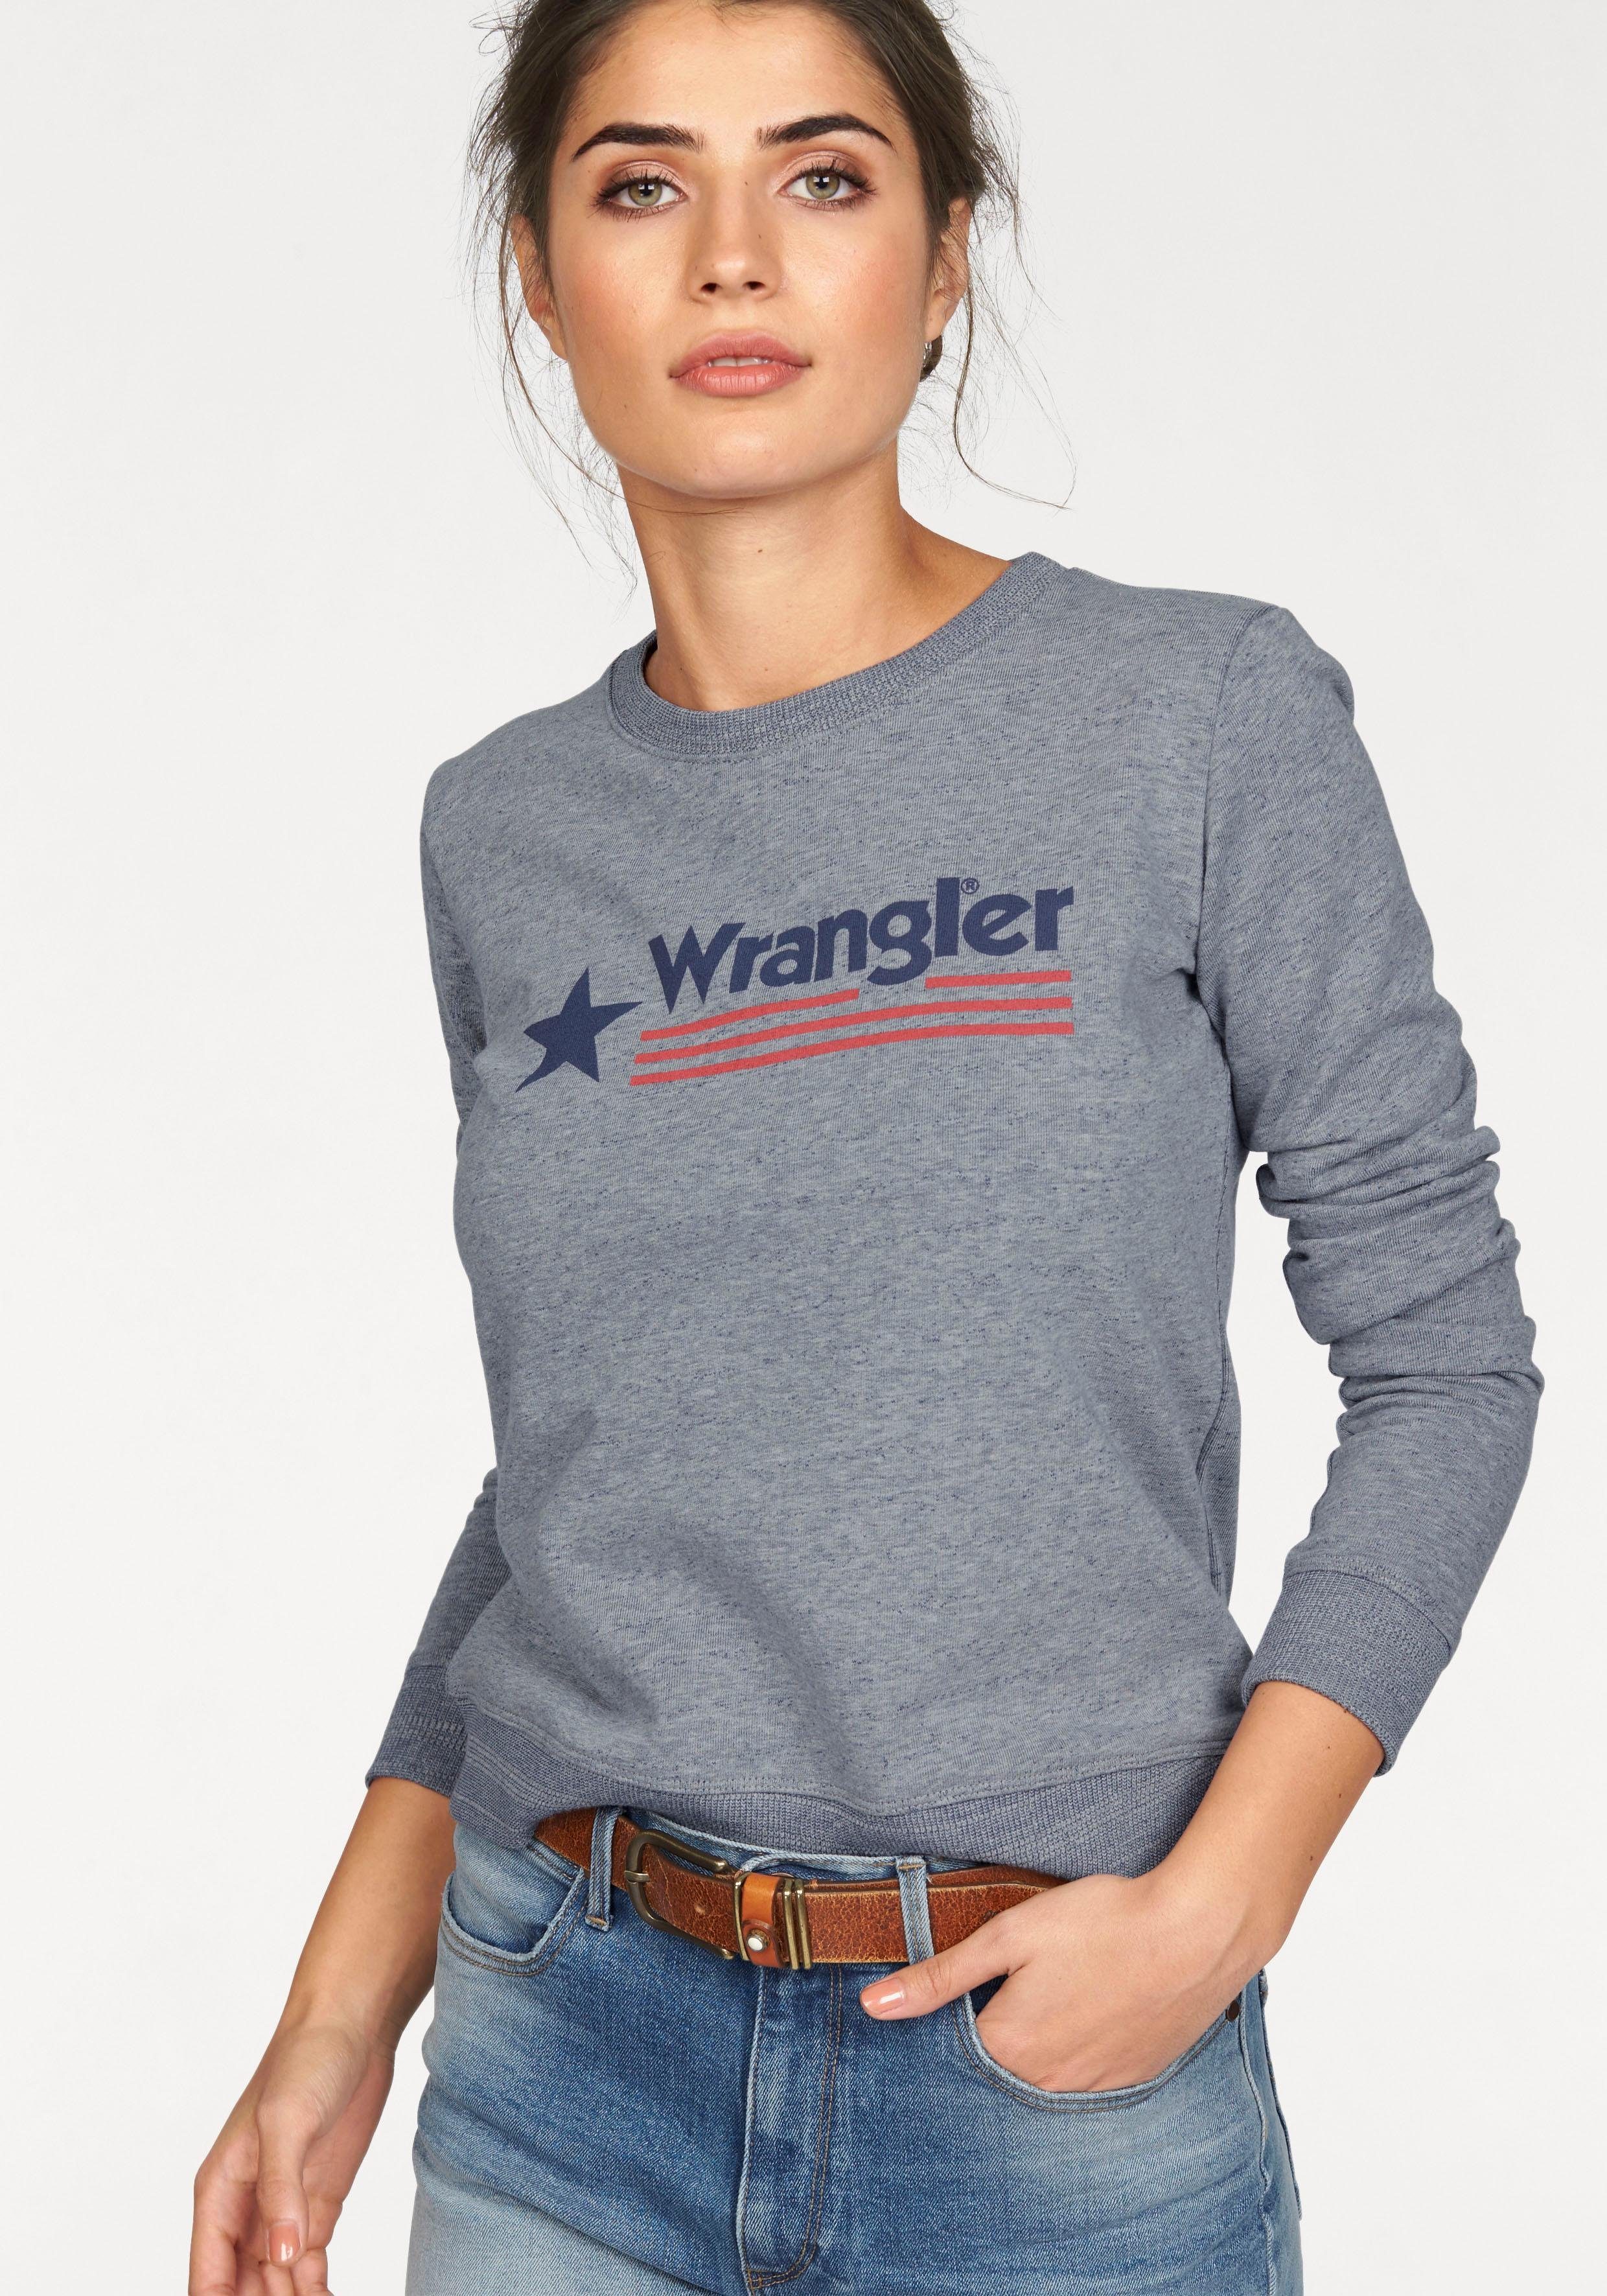 Otto - Wrangler NU 15% KORTING: WRANGLER sweatshirt